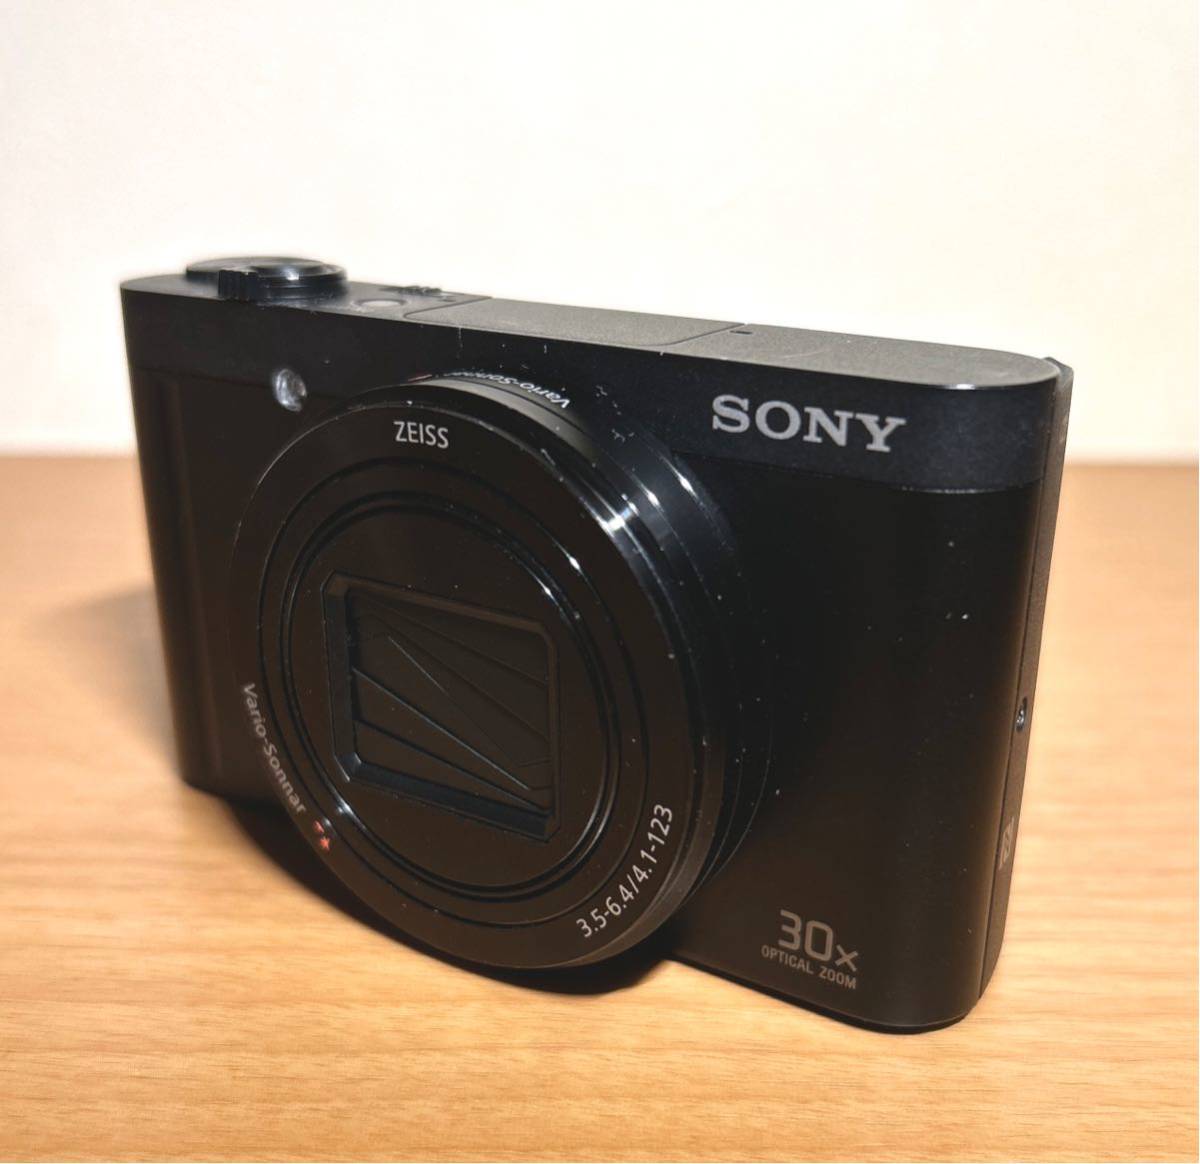 【中古品】ソニー DSC-WX500 デジタルカメラ& 純正ジャケットケース中古品(おまけSDカード付き)_画像2